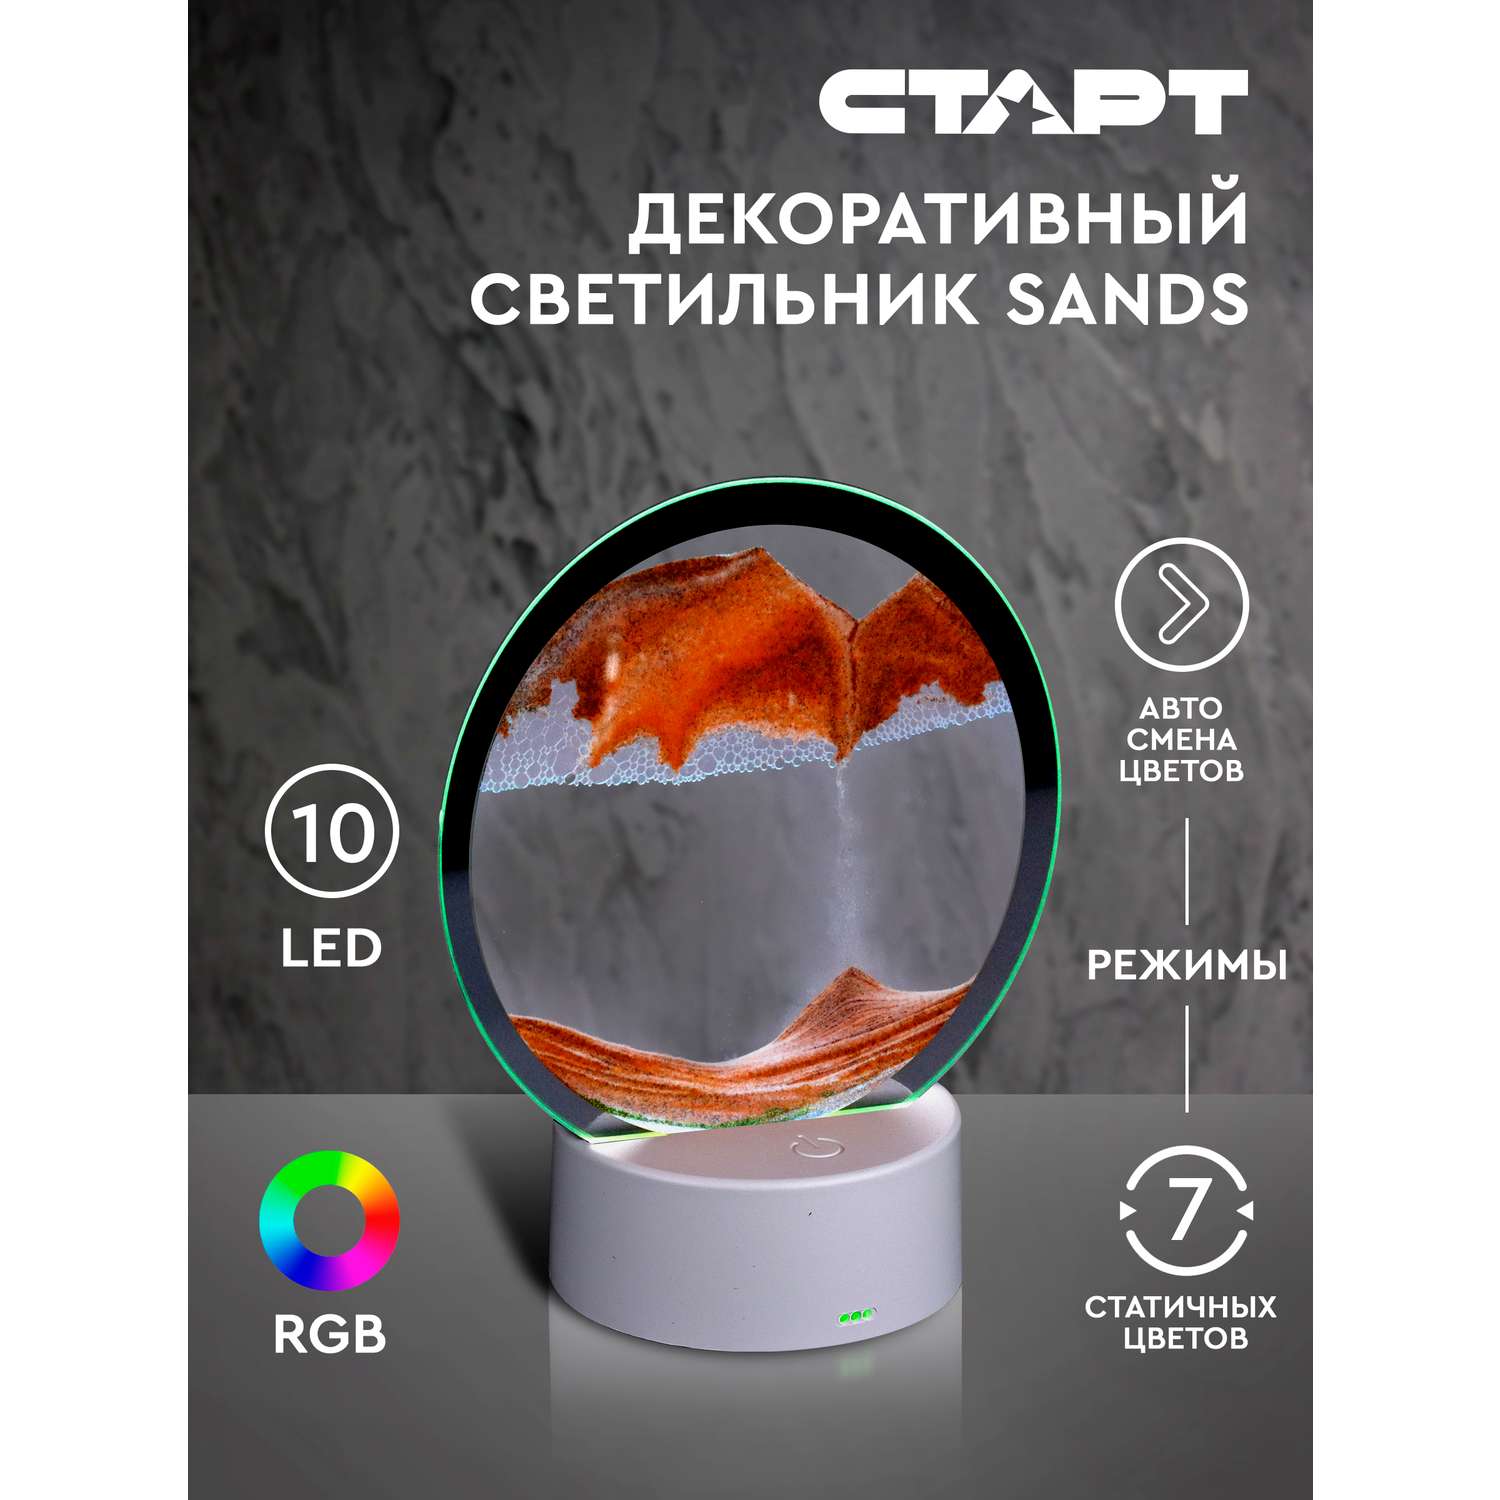 Светильник ночник СТАРТ декоративный серии Sands с песком оранжевого цвета - фото 2